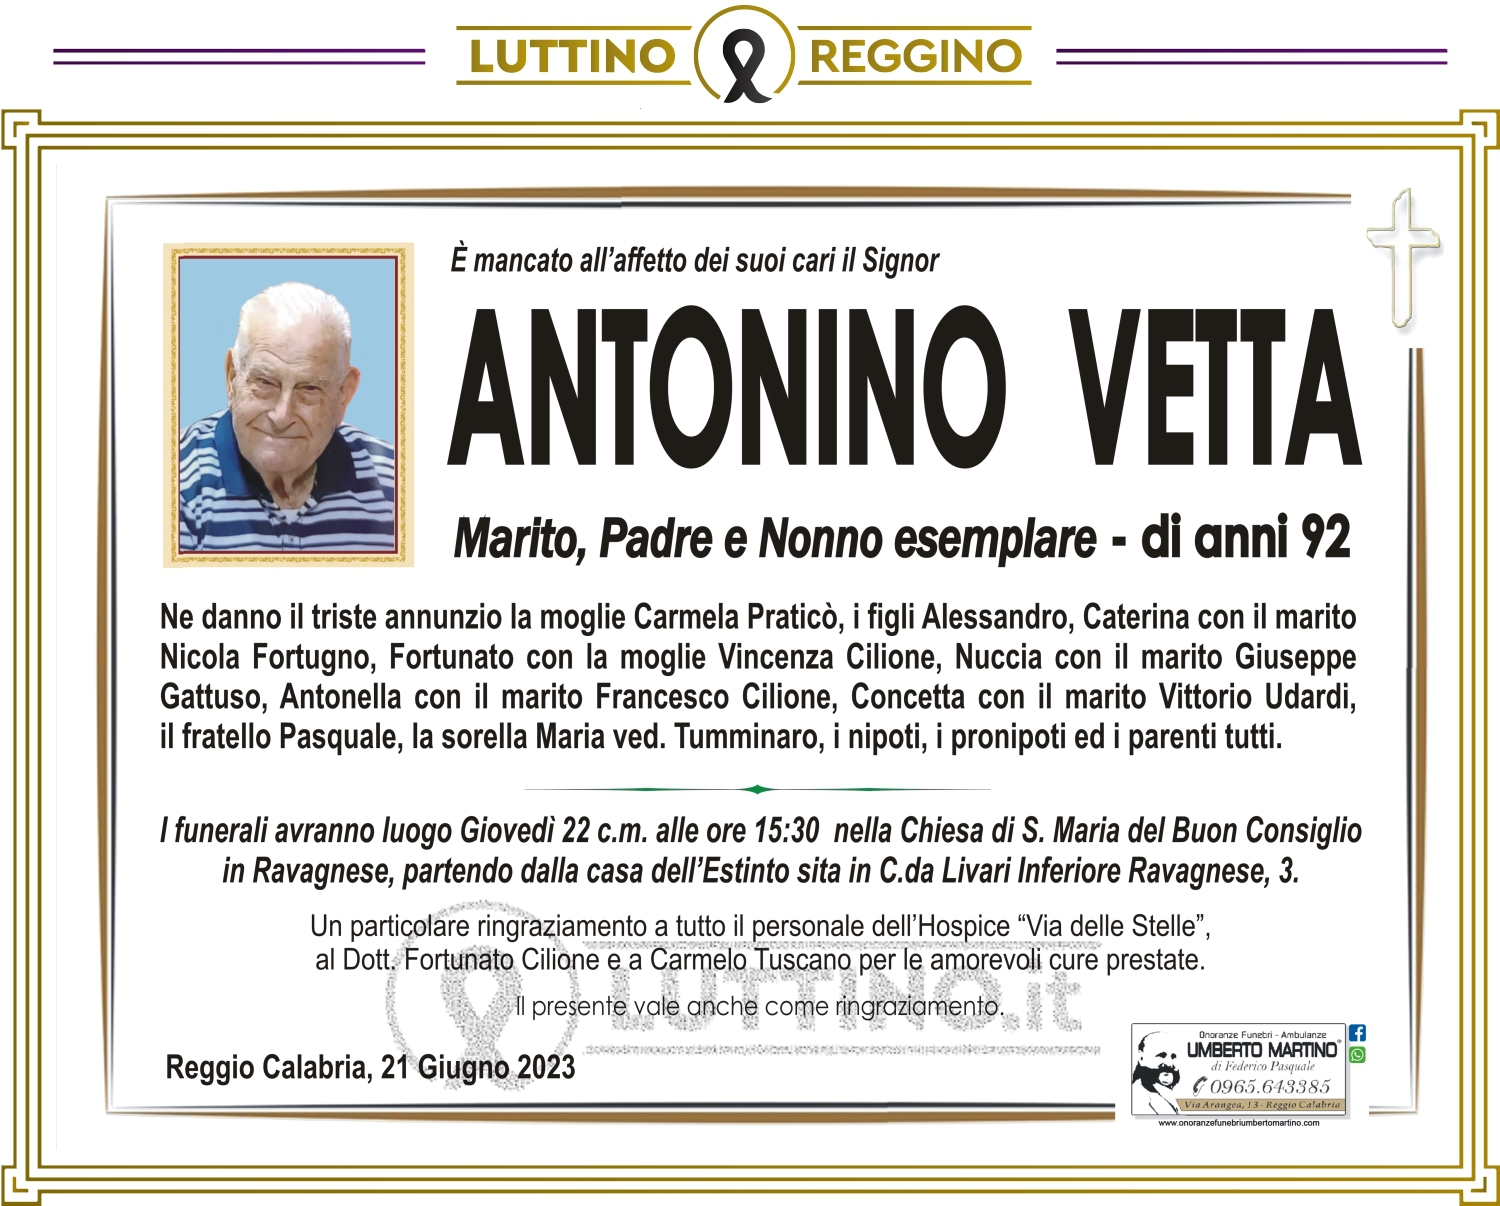 Antonino Vetta